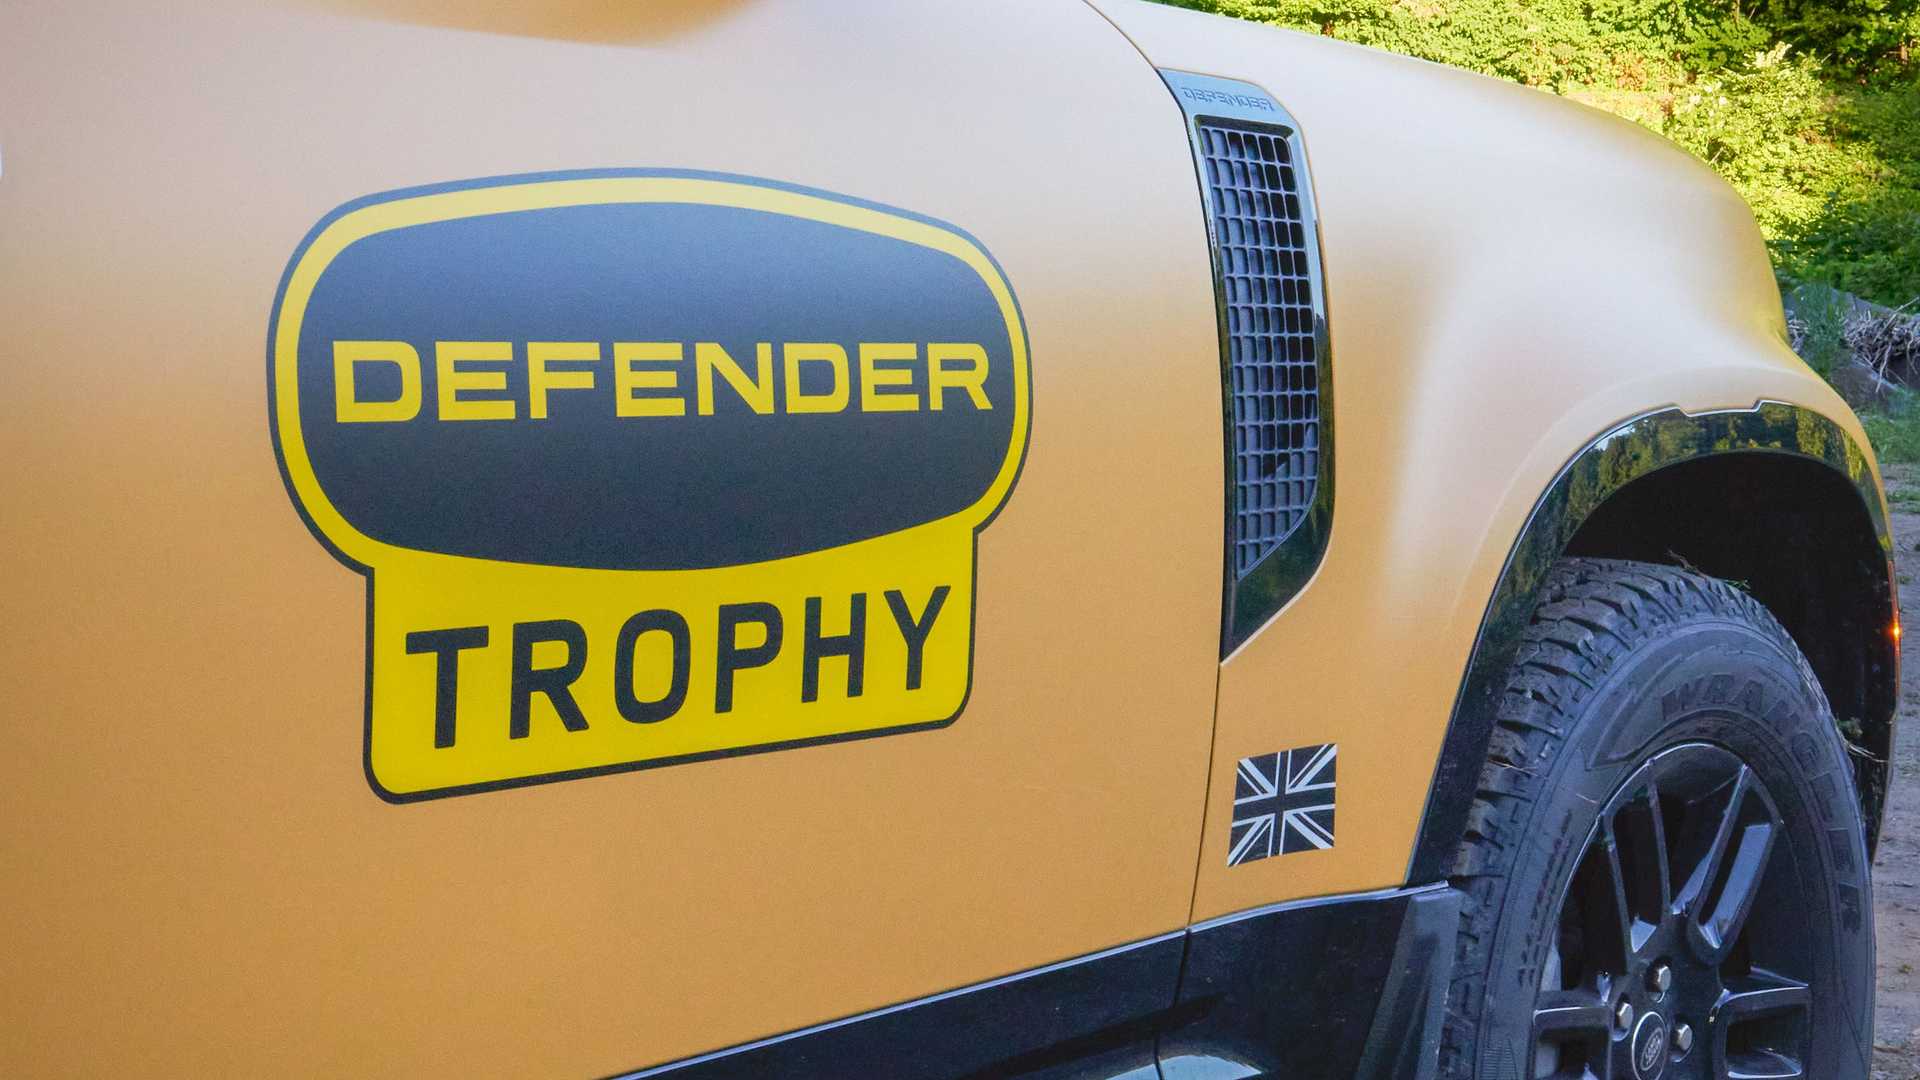 Land Rover Defender Trophy Edition 2022 4 | Dealer On Fire